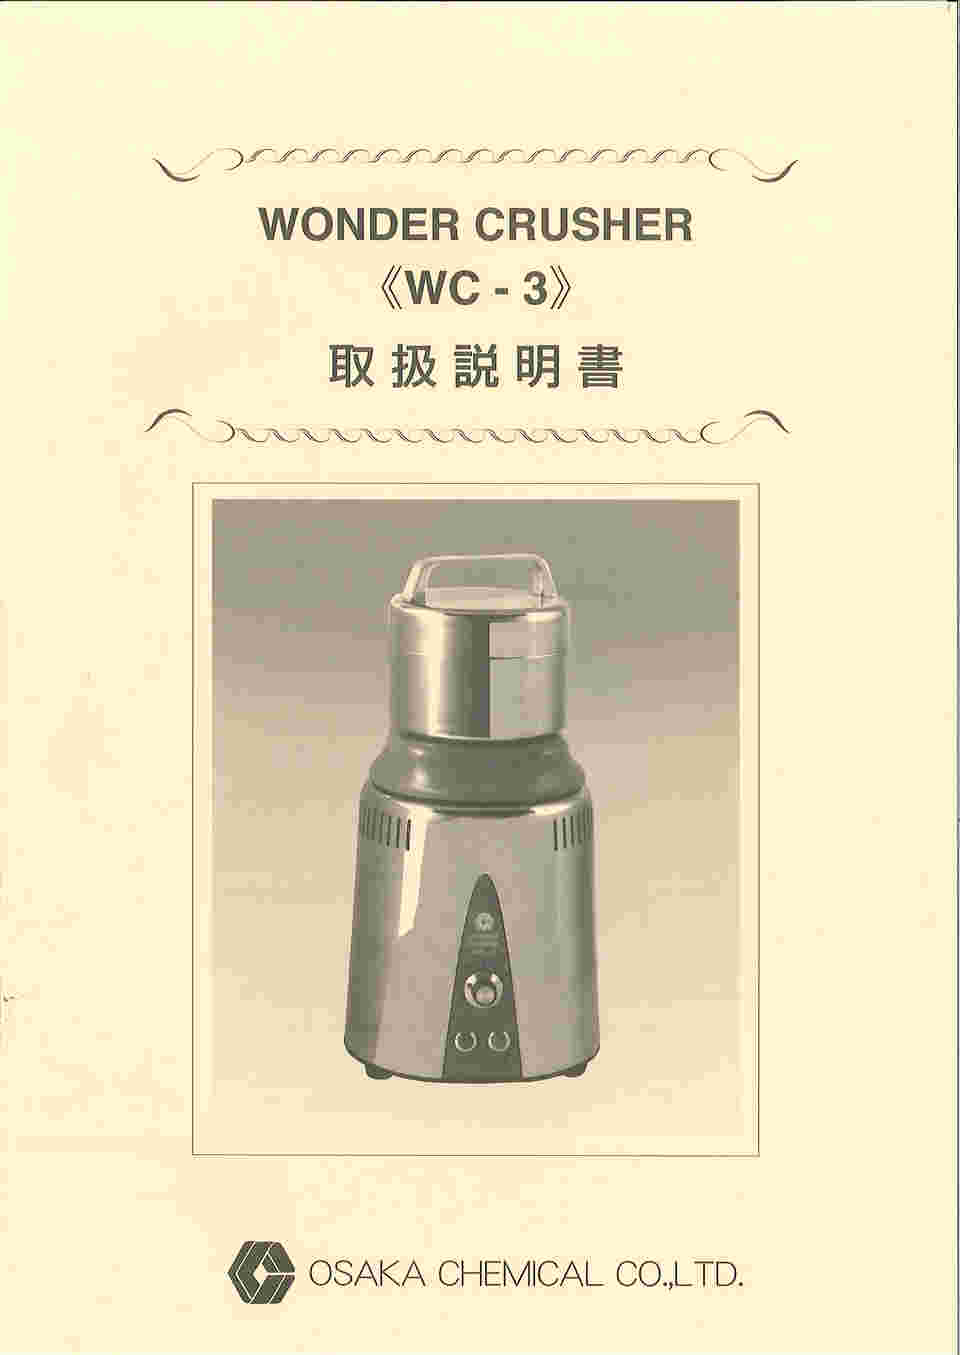 バースデー 記念日 ギフト 贈物 お勧め 通販 CHEMICAL 大阪ケミカル ワンダークラッシャー WC-3 